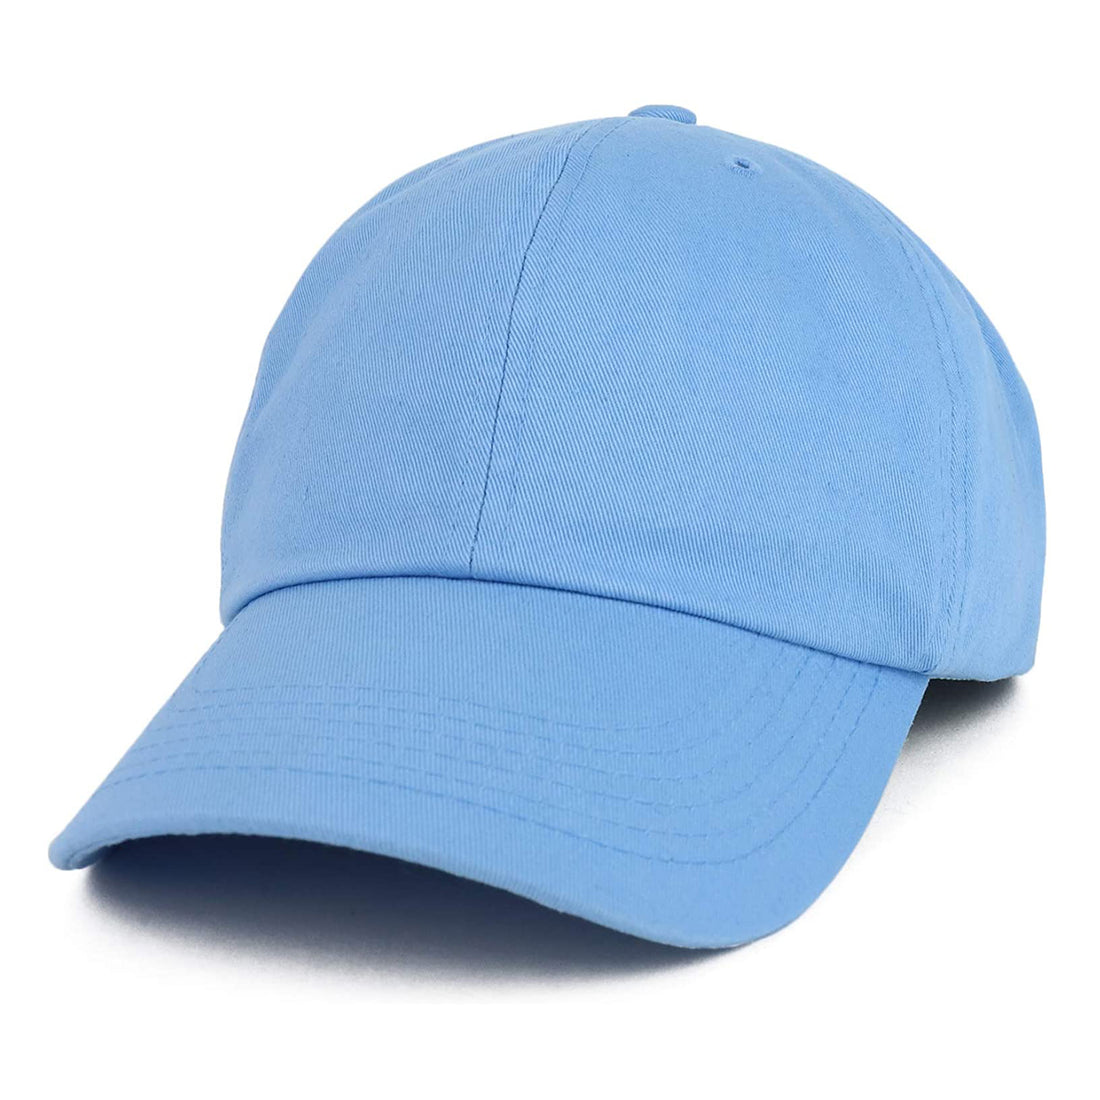 Trendy Apparel Shop Oversize XXL Plain Unstructured Soft Crown Cotton Dad Hat